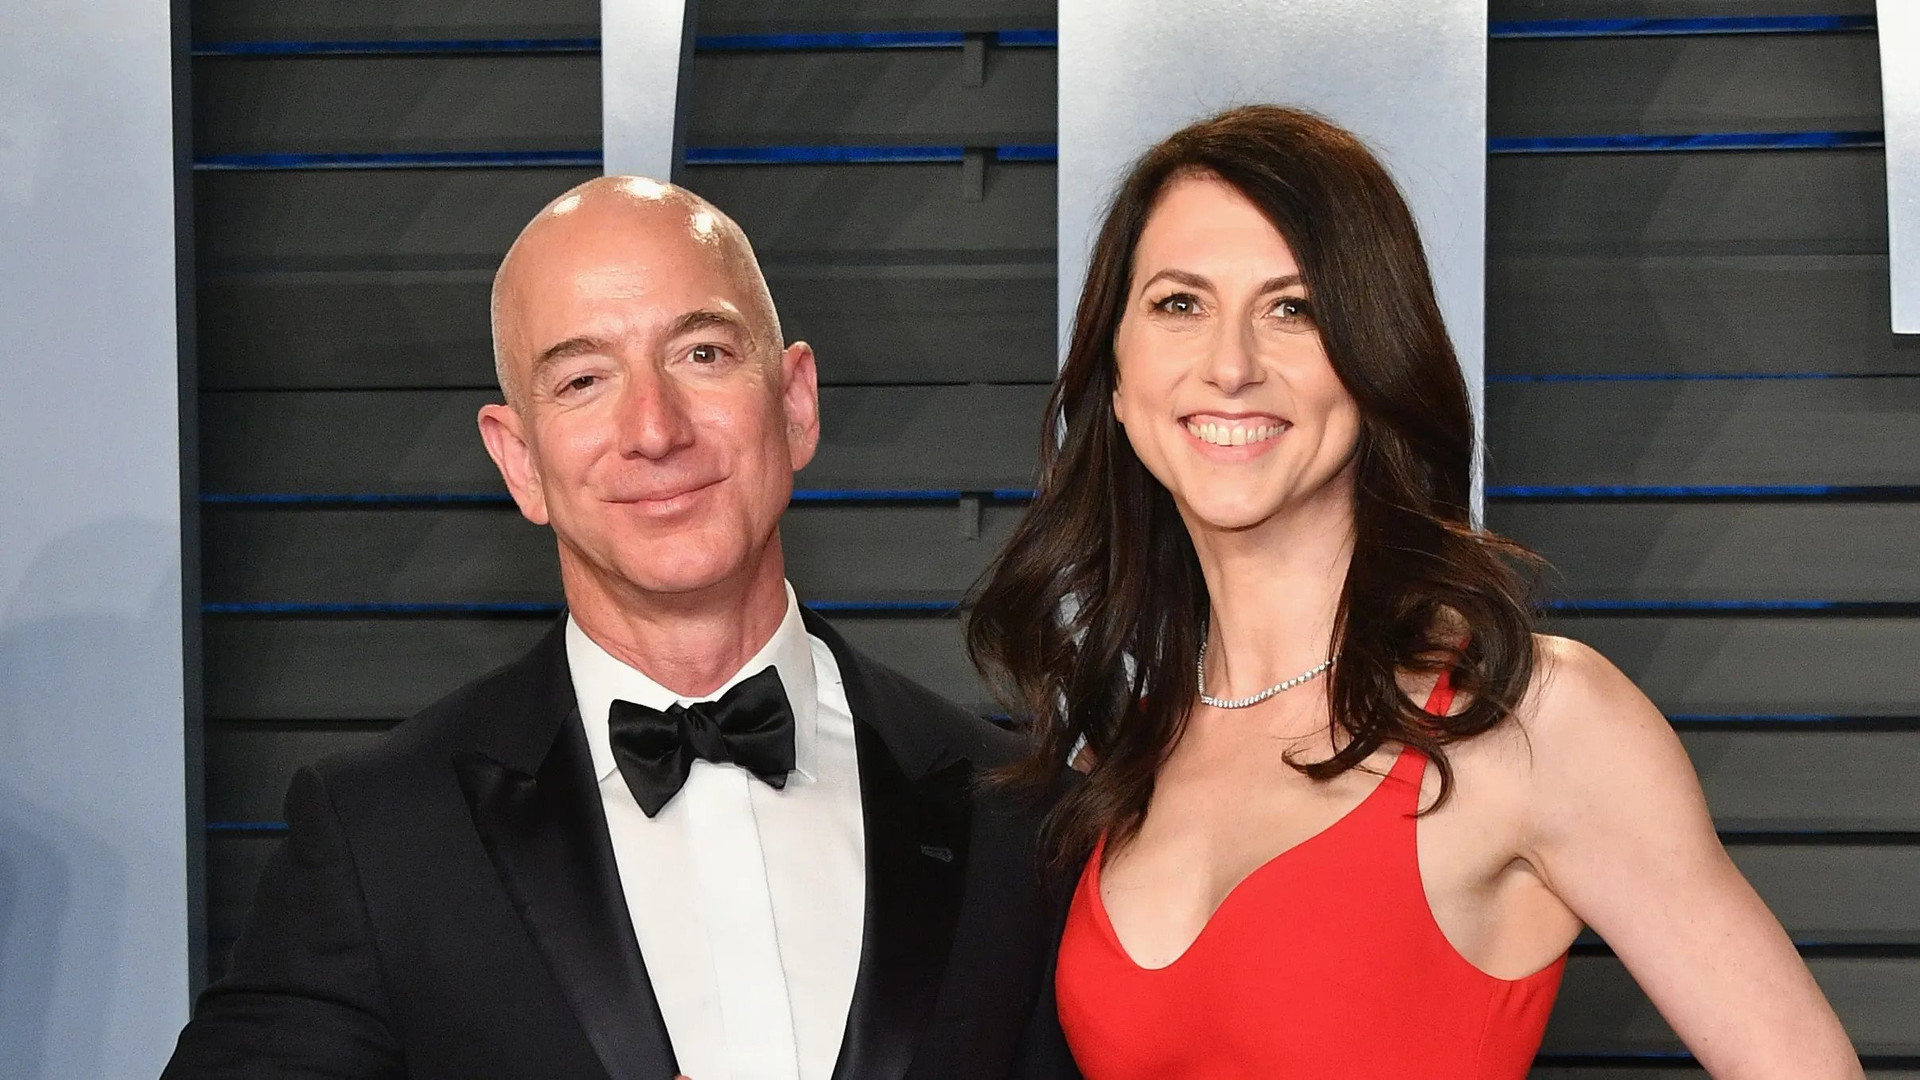 Vợ cũ cho đi tài sản mãi chưa hết, tỷ phú giàu thứ 4 thế giới Jeff Bezos khẳng định: Khó cho đi số tiền lớn một cách hiệu quả - Ảnh 3.